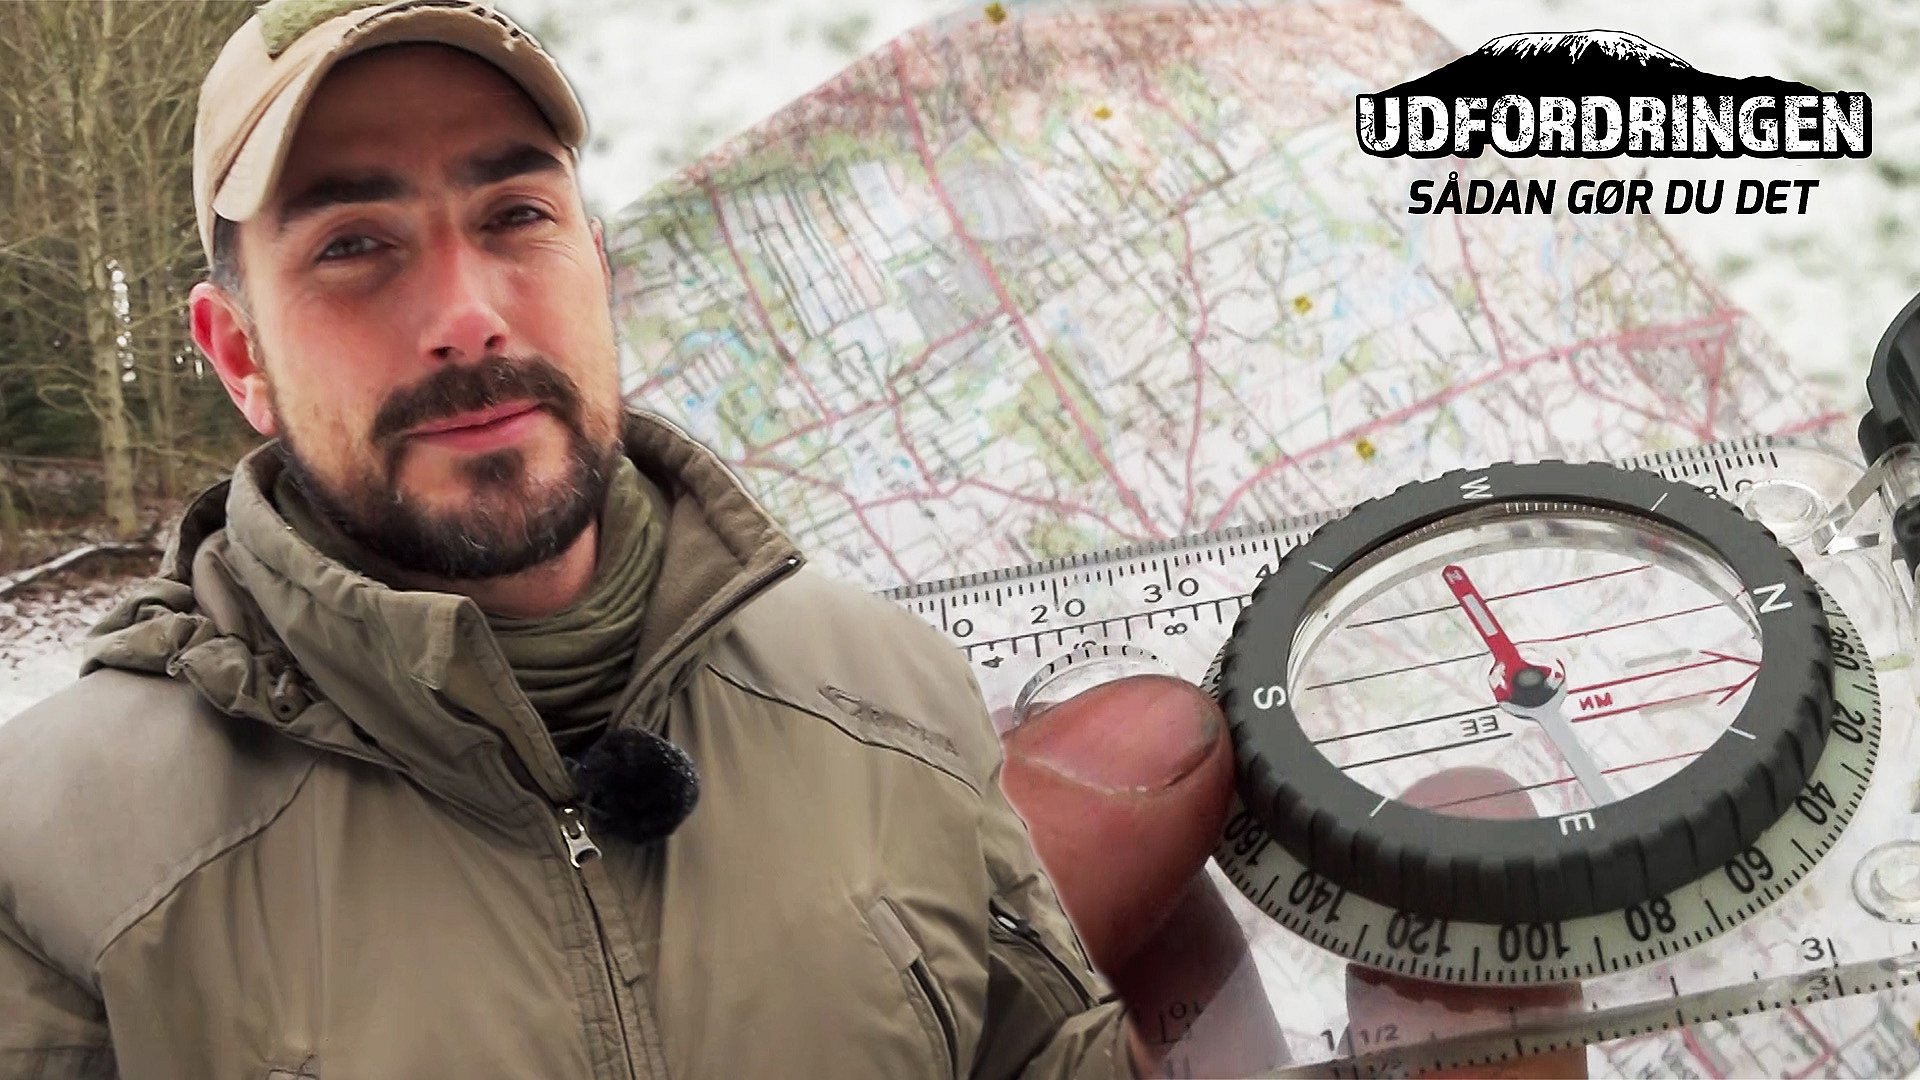 for mig Hula hop Græder Sluk GPS'en: Lær at bruge kort og kompas med Vildmarks-Jon | TV2 Nord